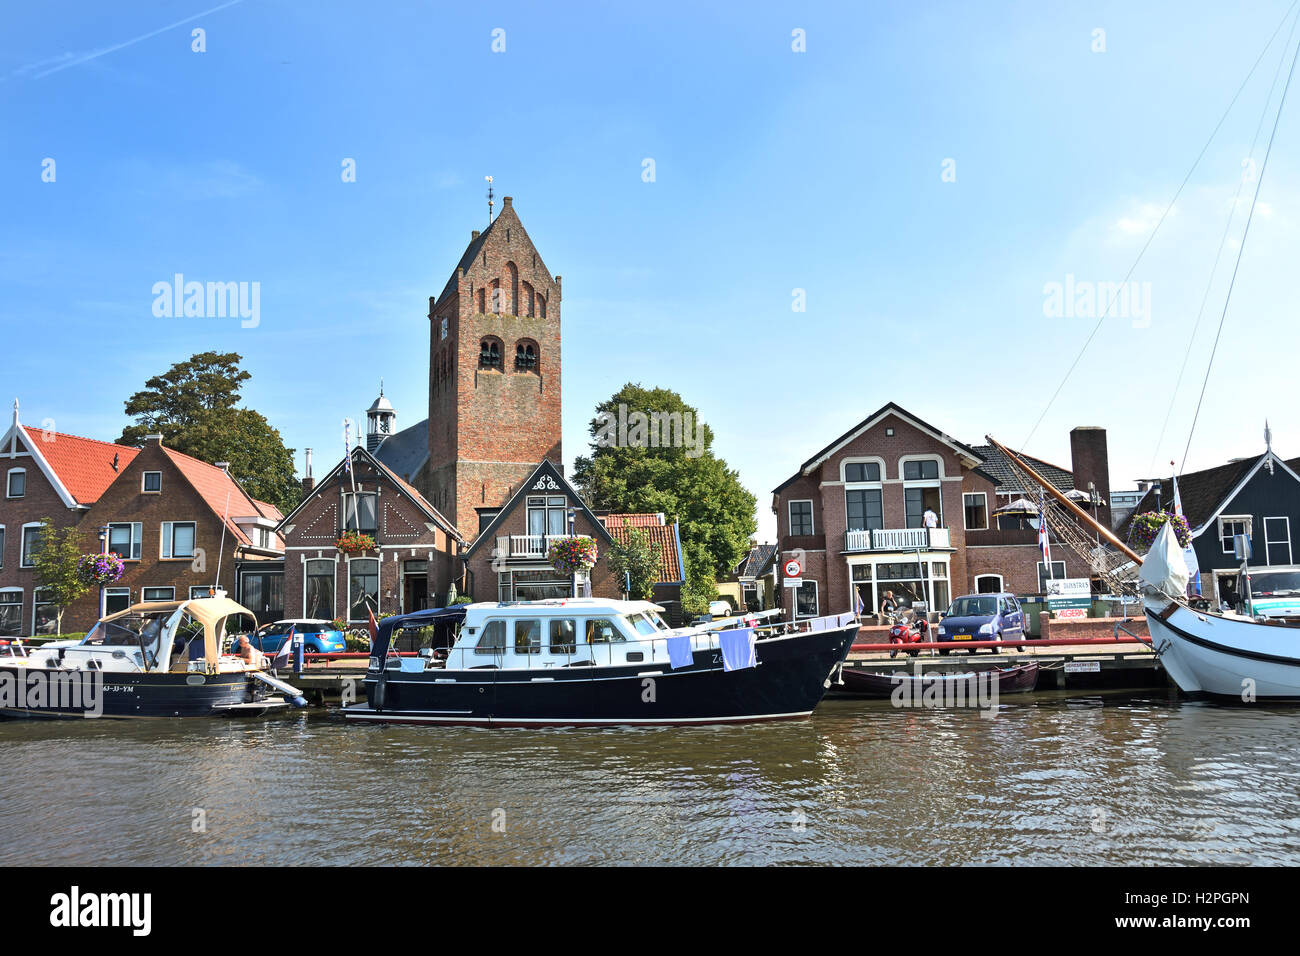 Grou Grouw frise frise Pays-bas Petite ville néerlandaise ( Sint Piter kerk - église ) Banque D'Images